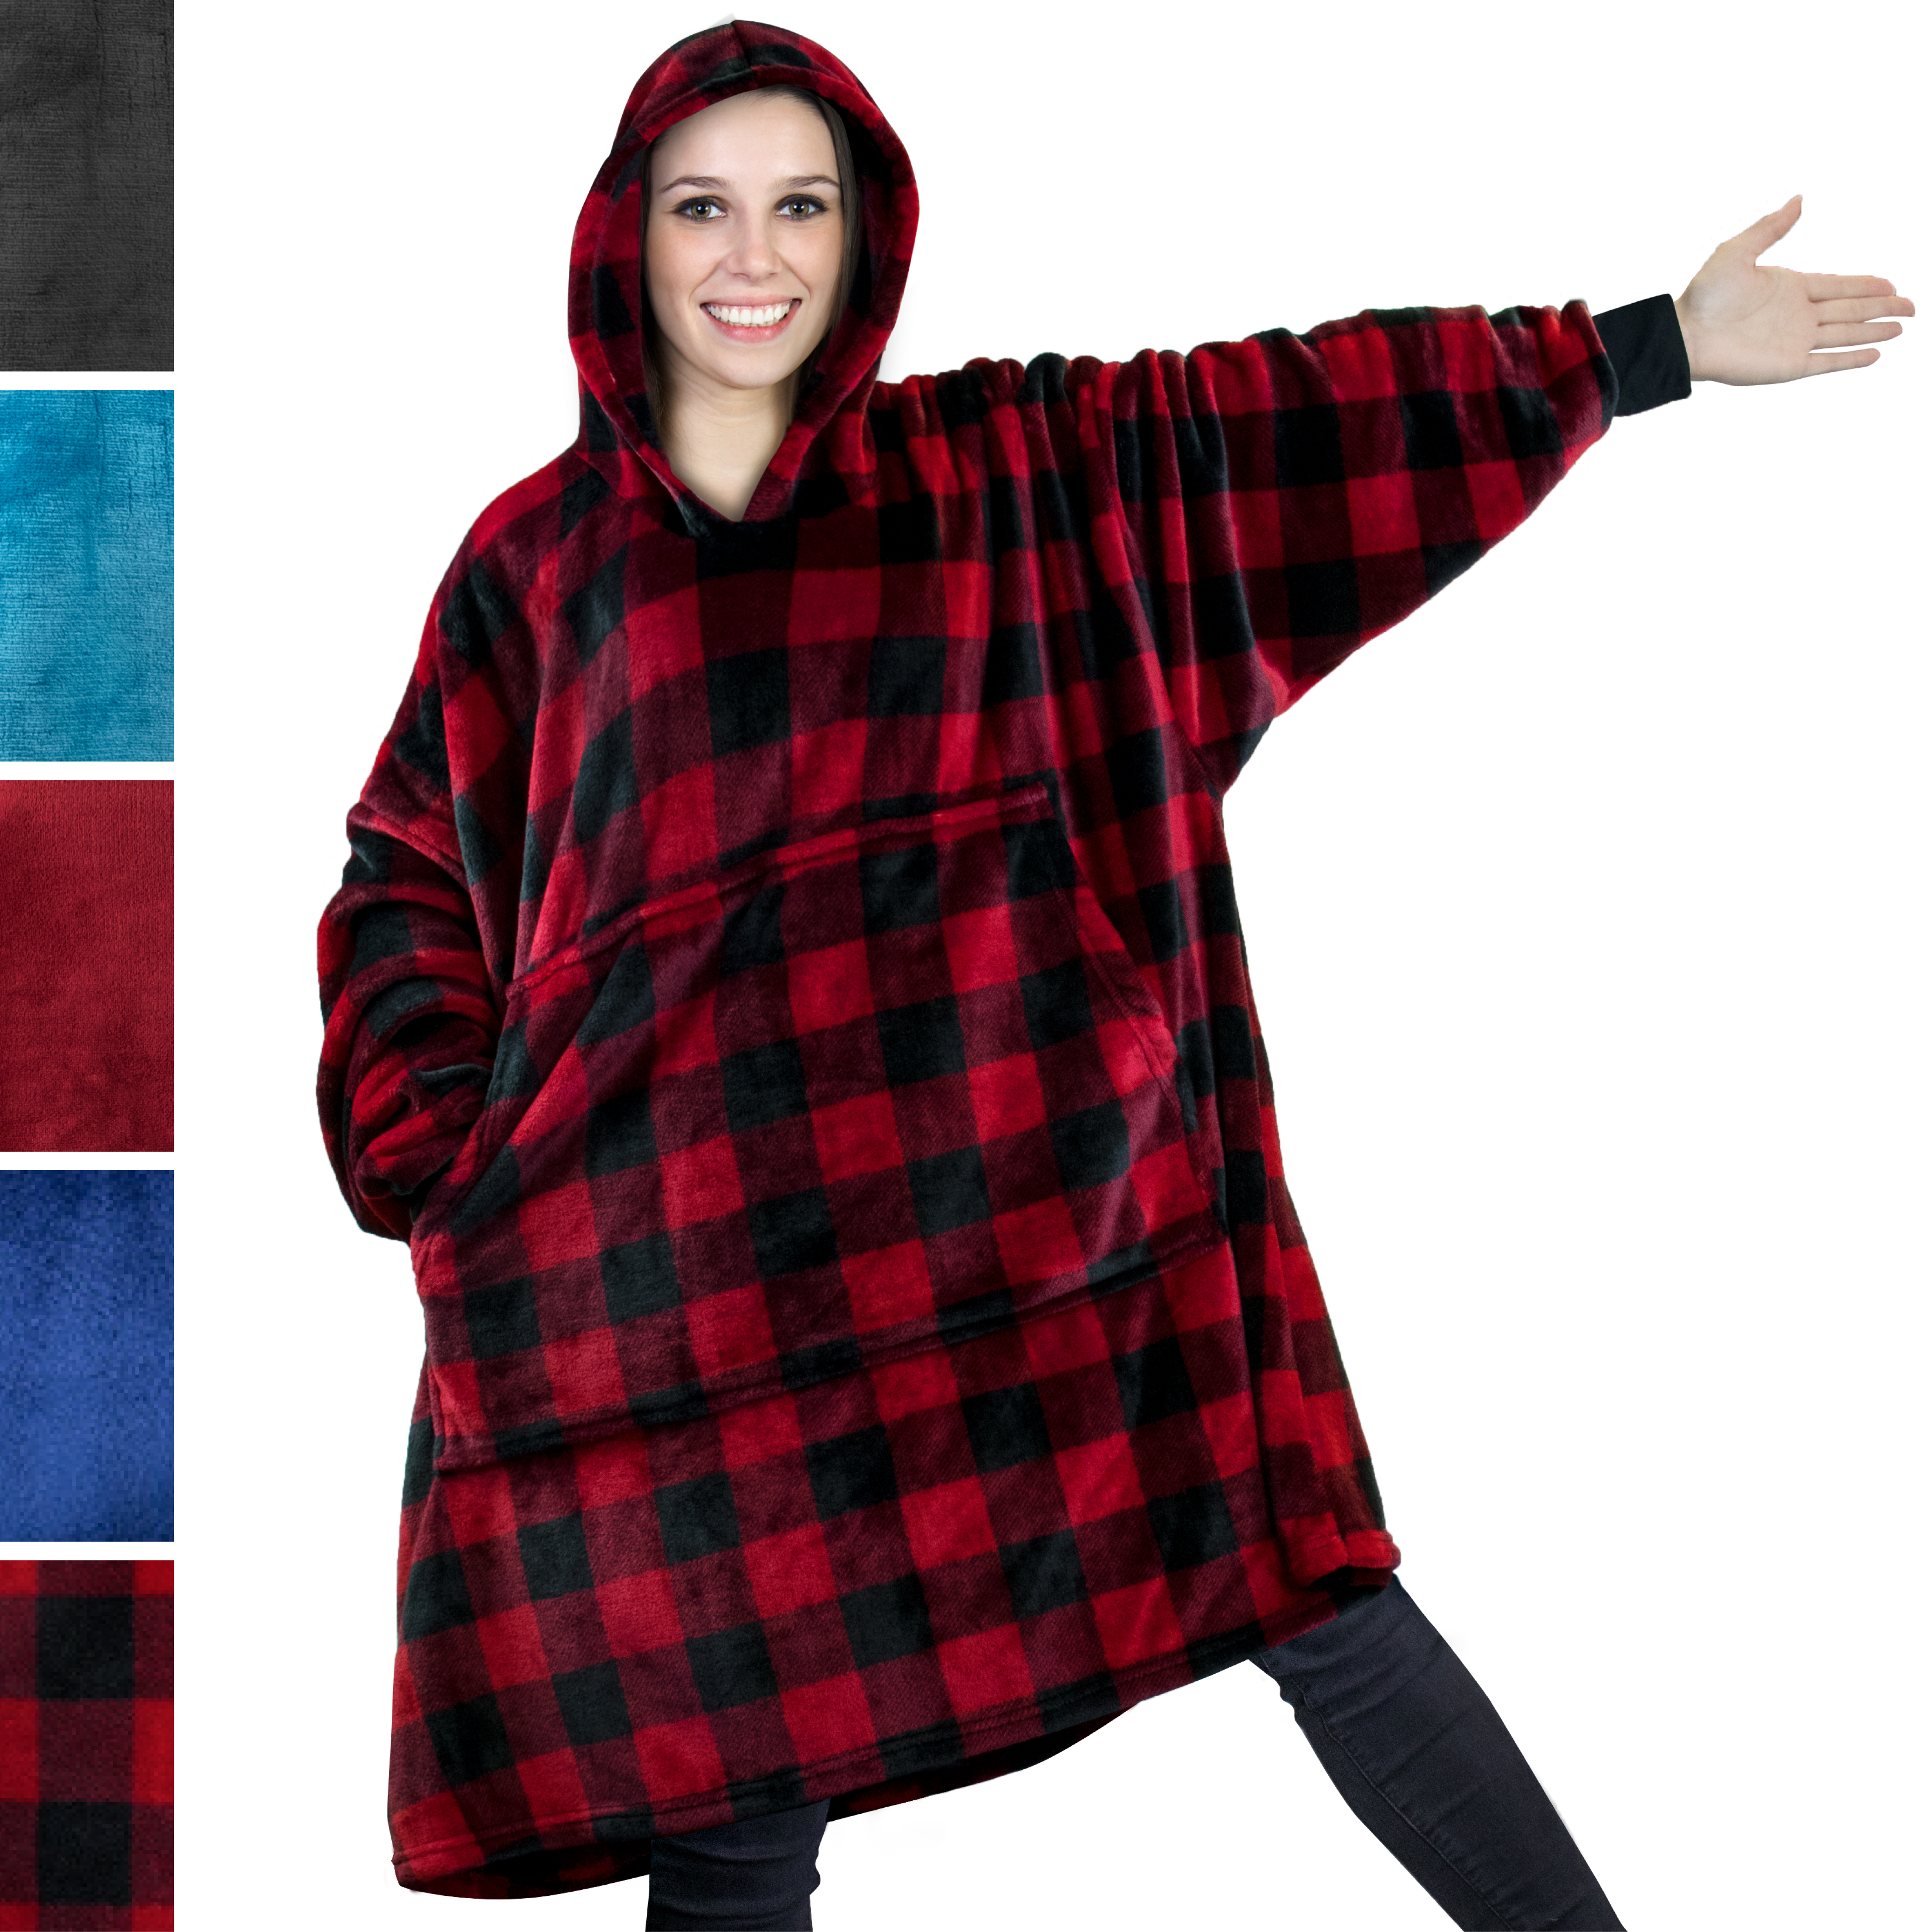 Comfy HOODIE SWEATSHIRT Wearable Blanket With Hood Sleeves Large Pocket  Sherpa